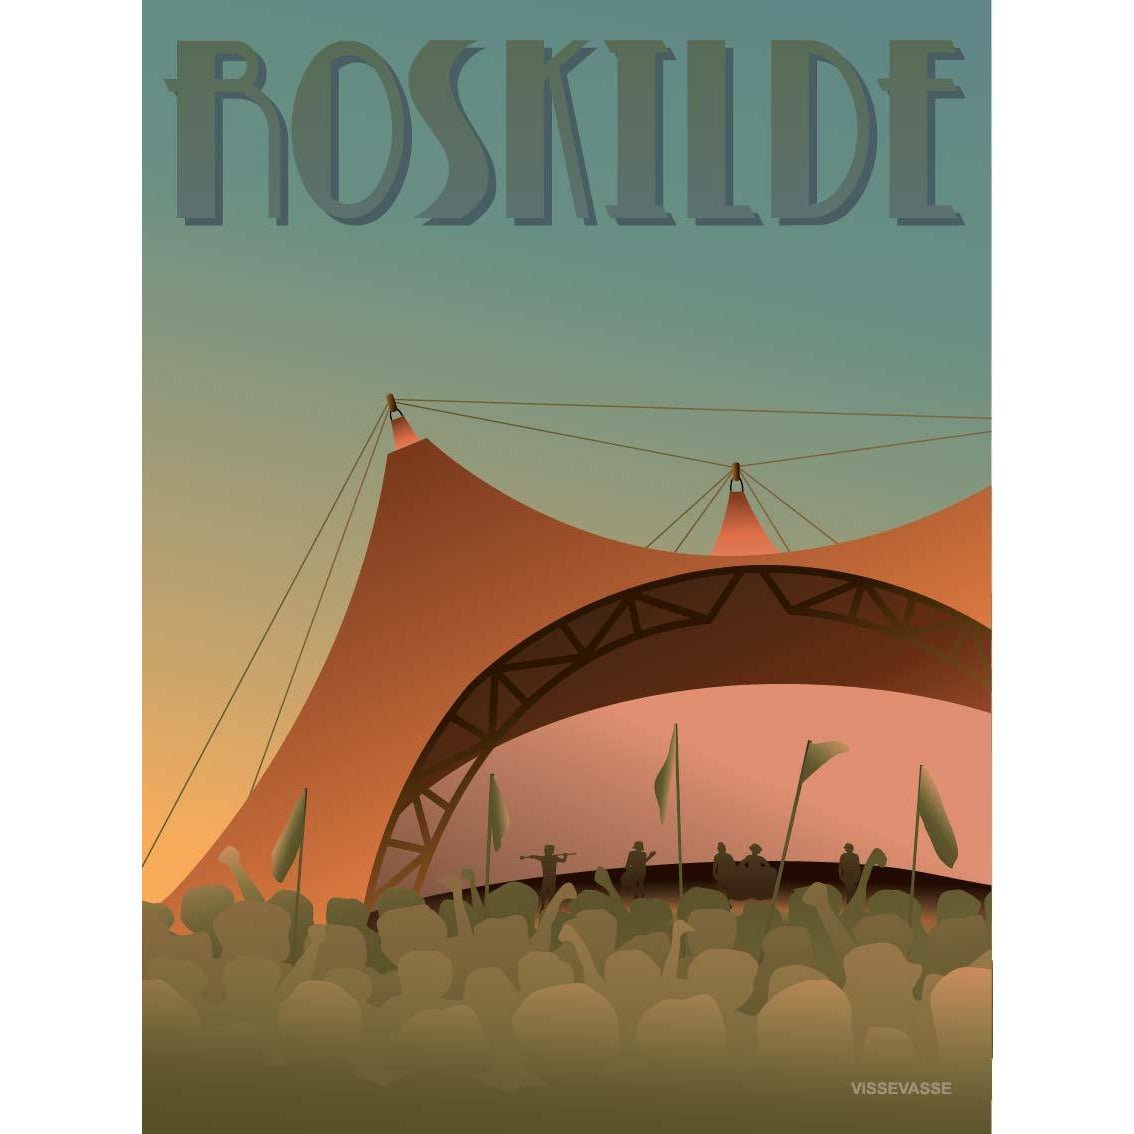 Póster del Festival Vissevasse Roskilde, 30 x40 cm